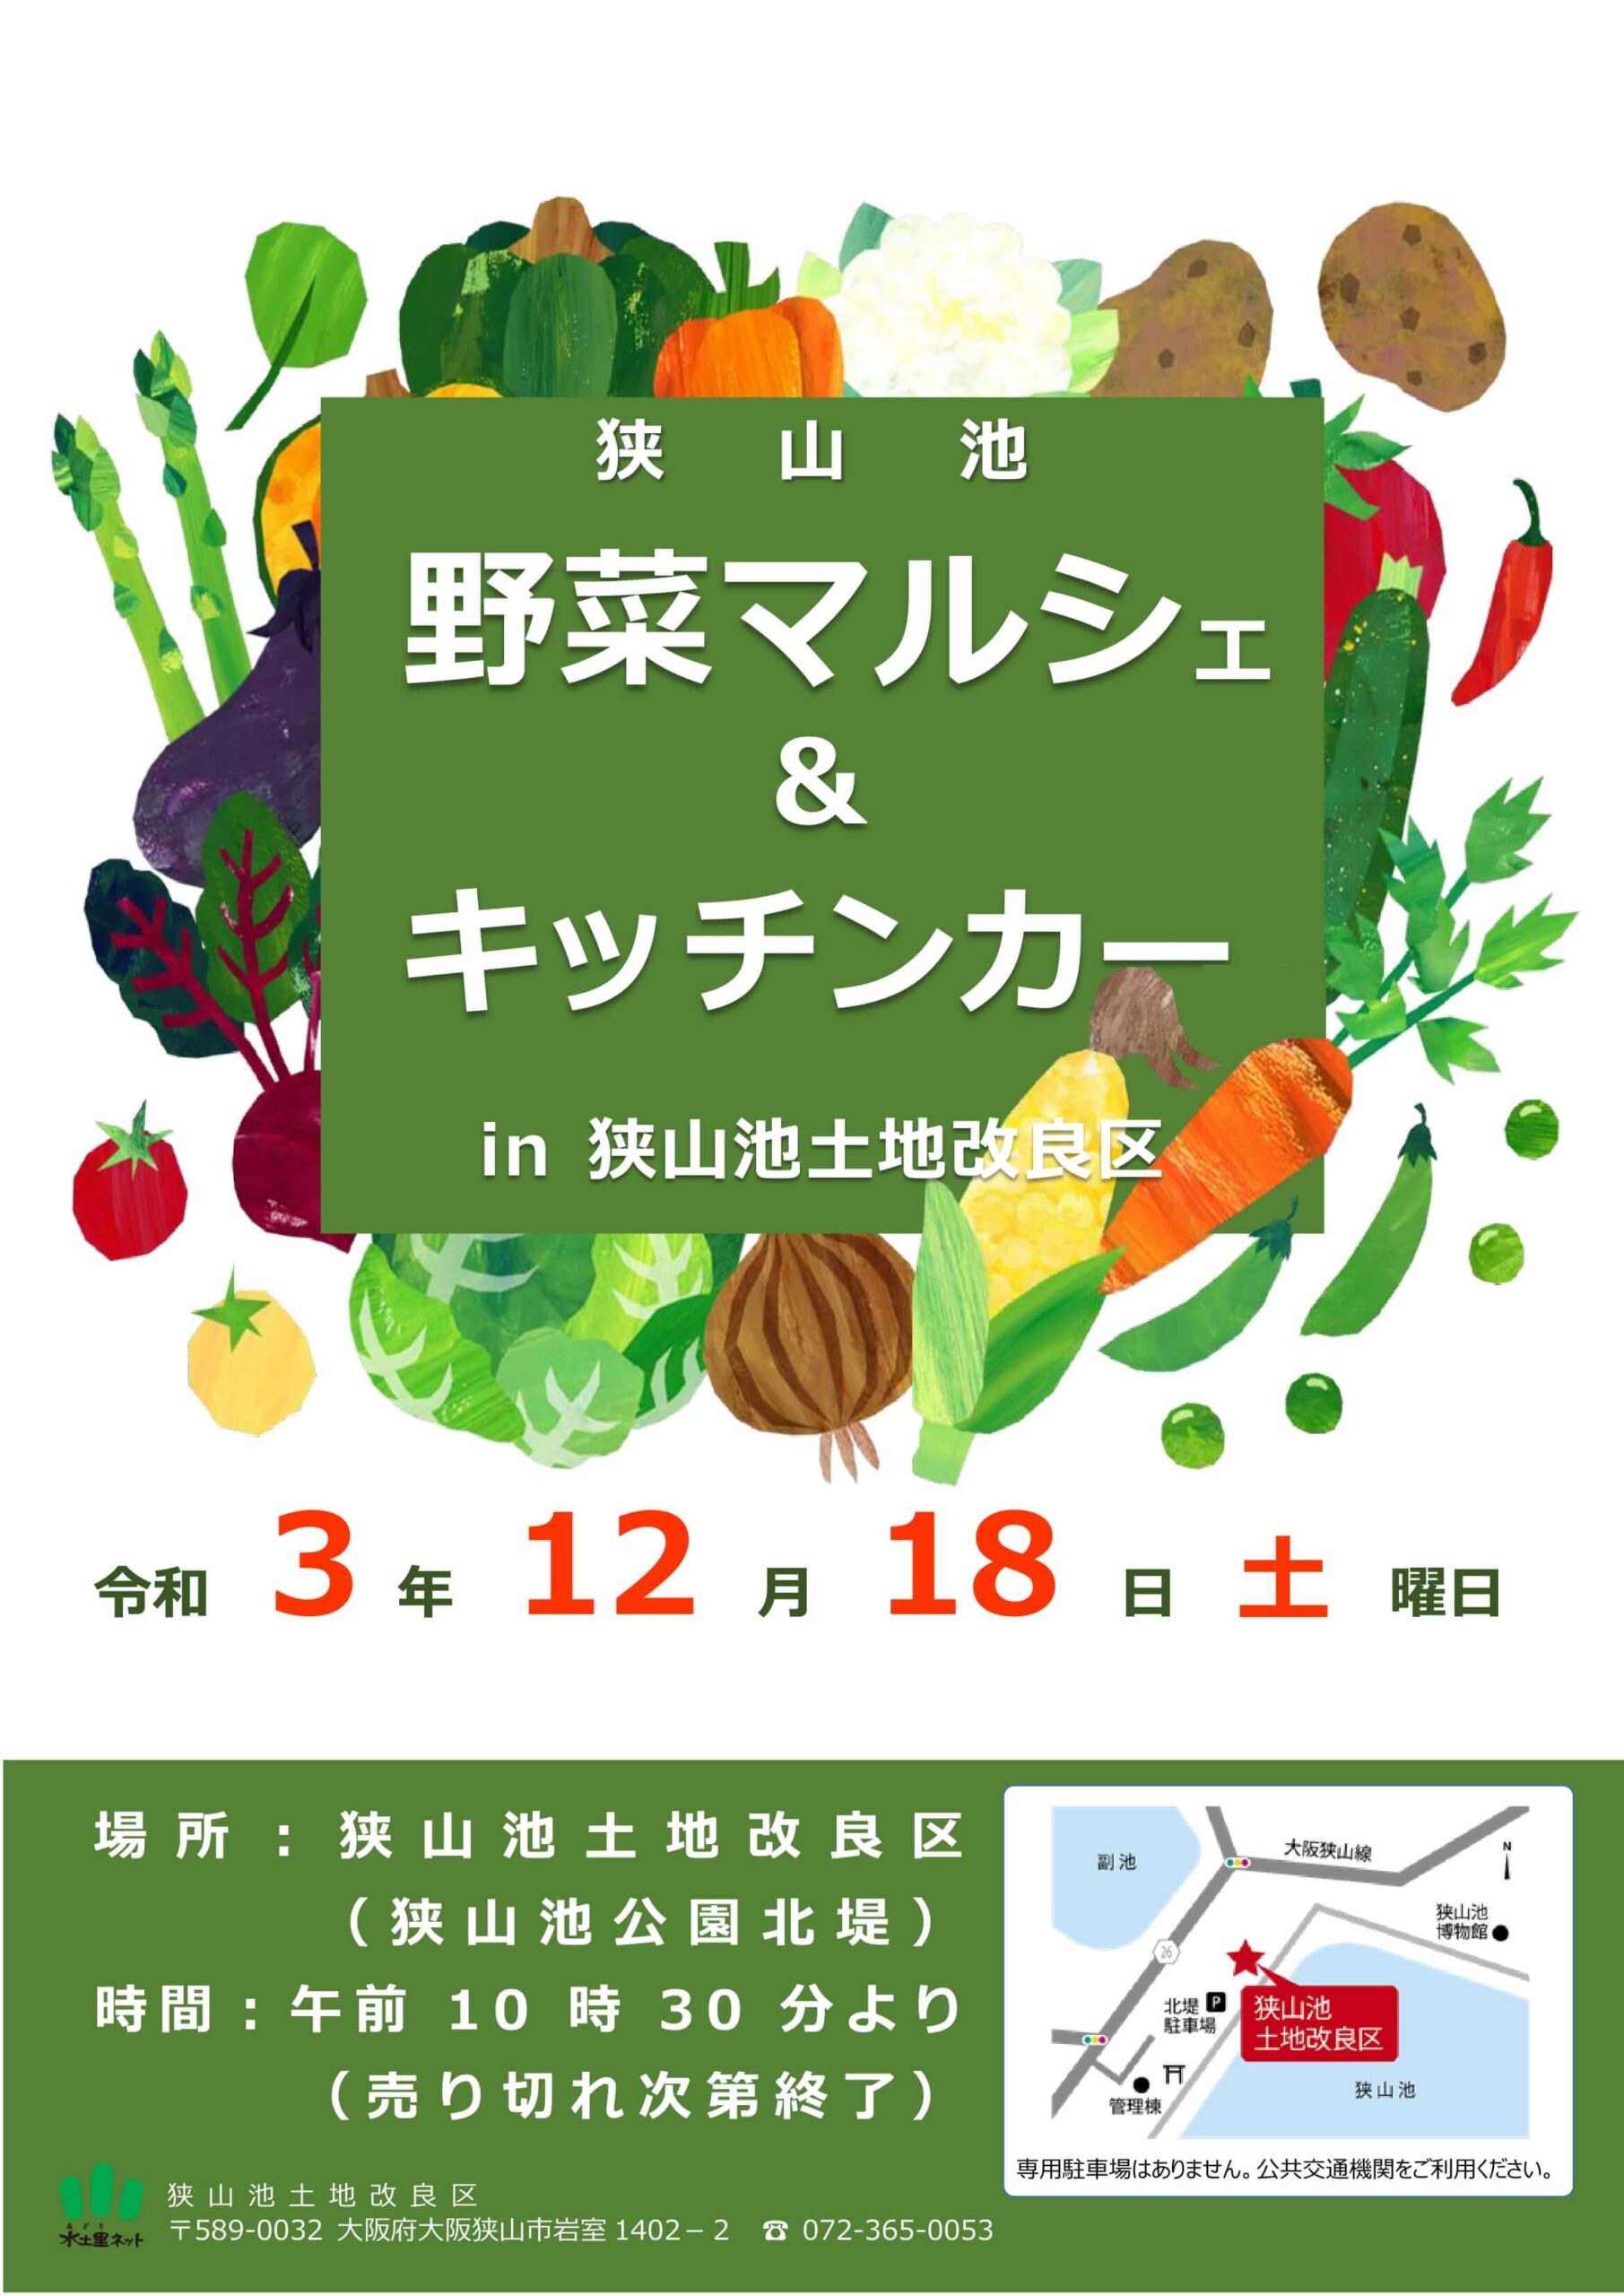 狭山池で「野菜マルシェ」&「キッチンカー」が2021年12月18日に開催されます